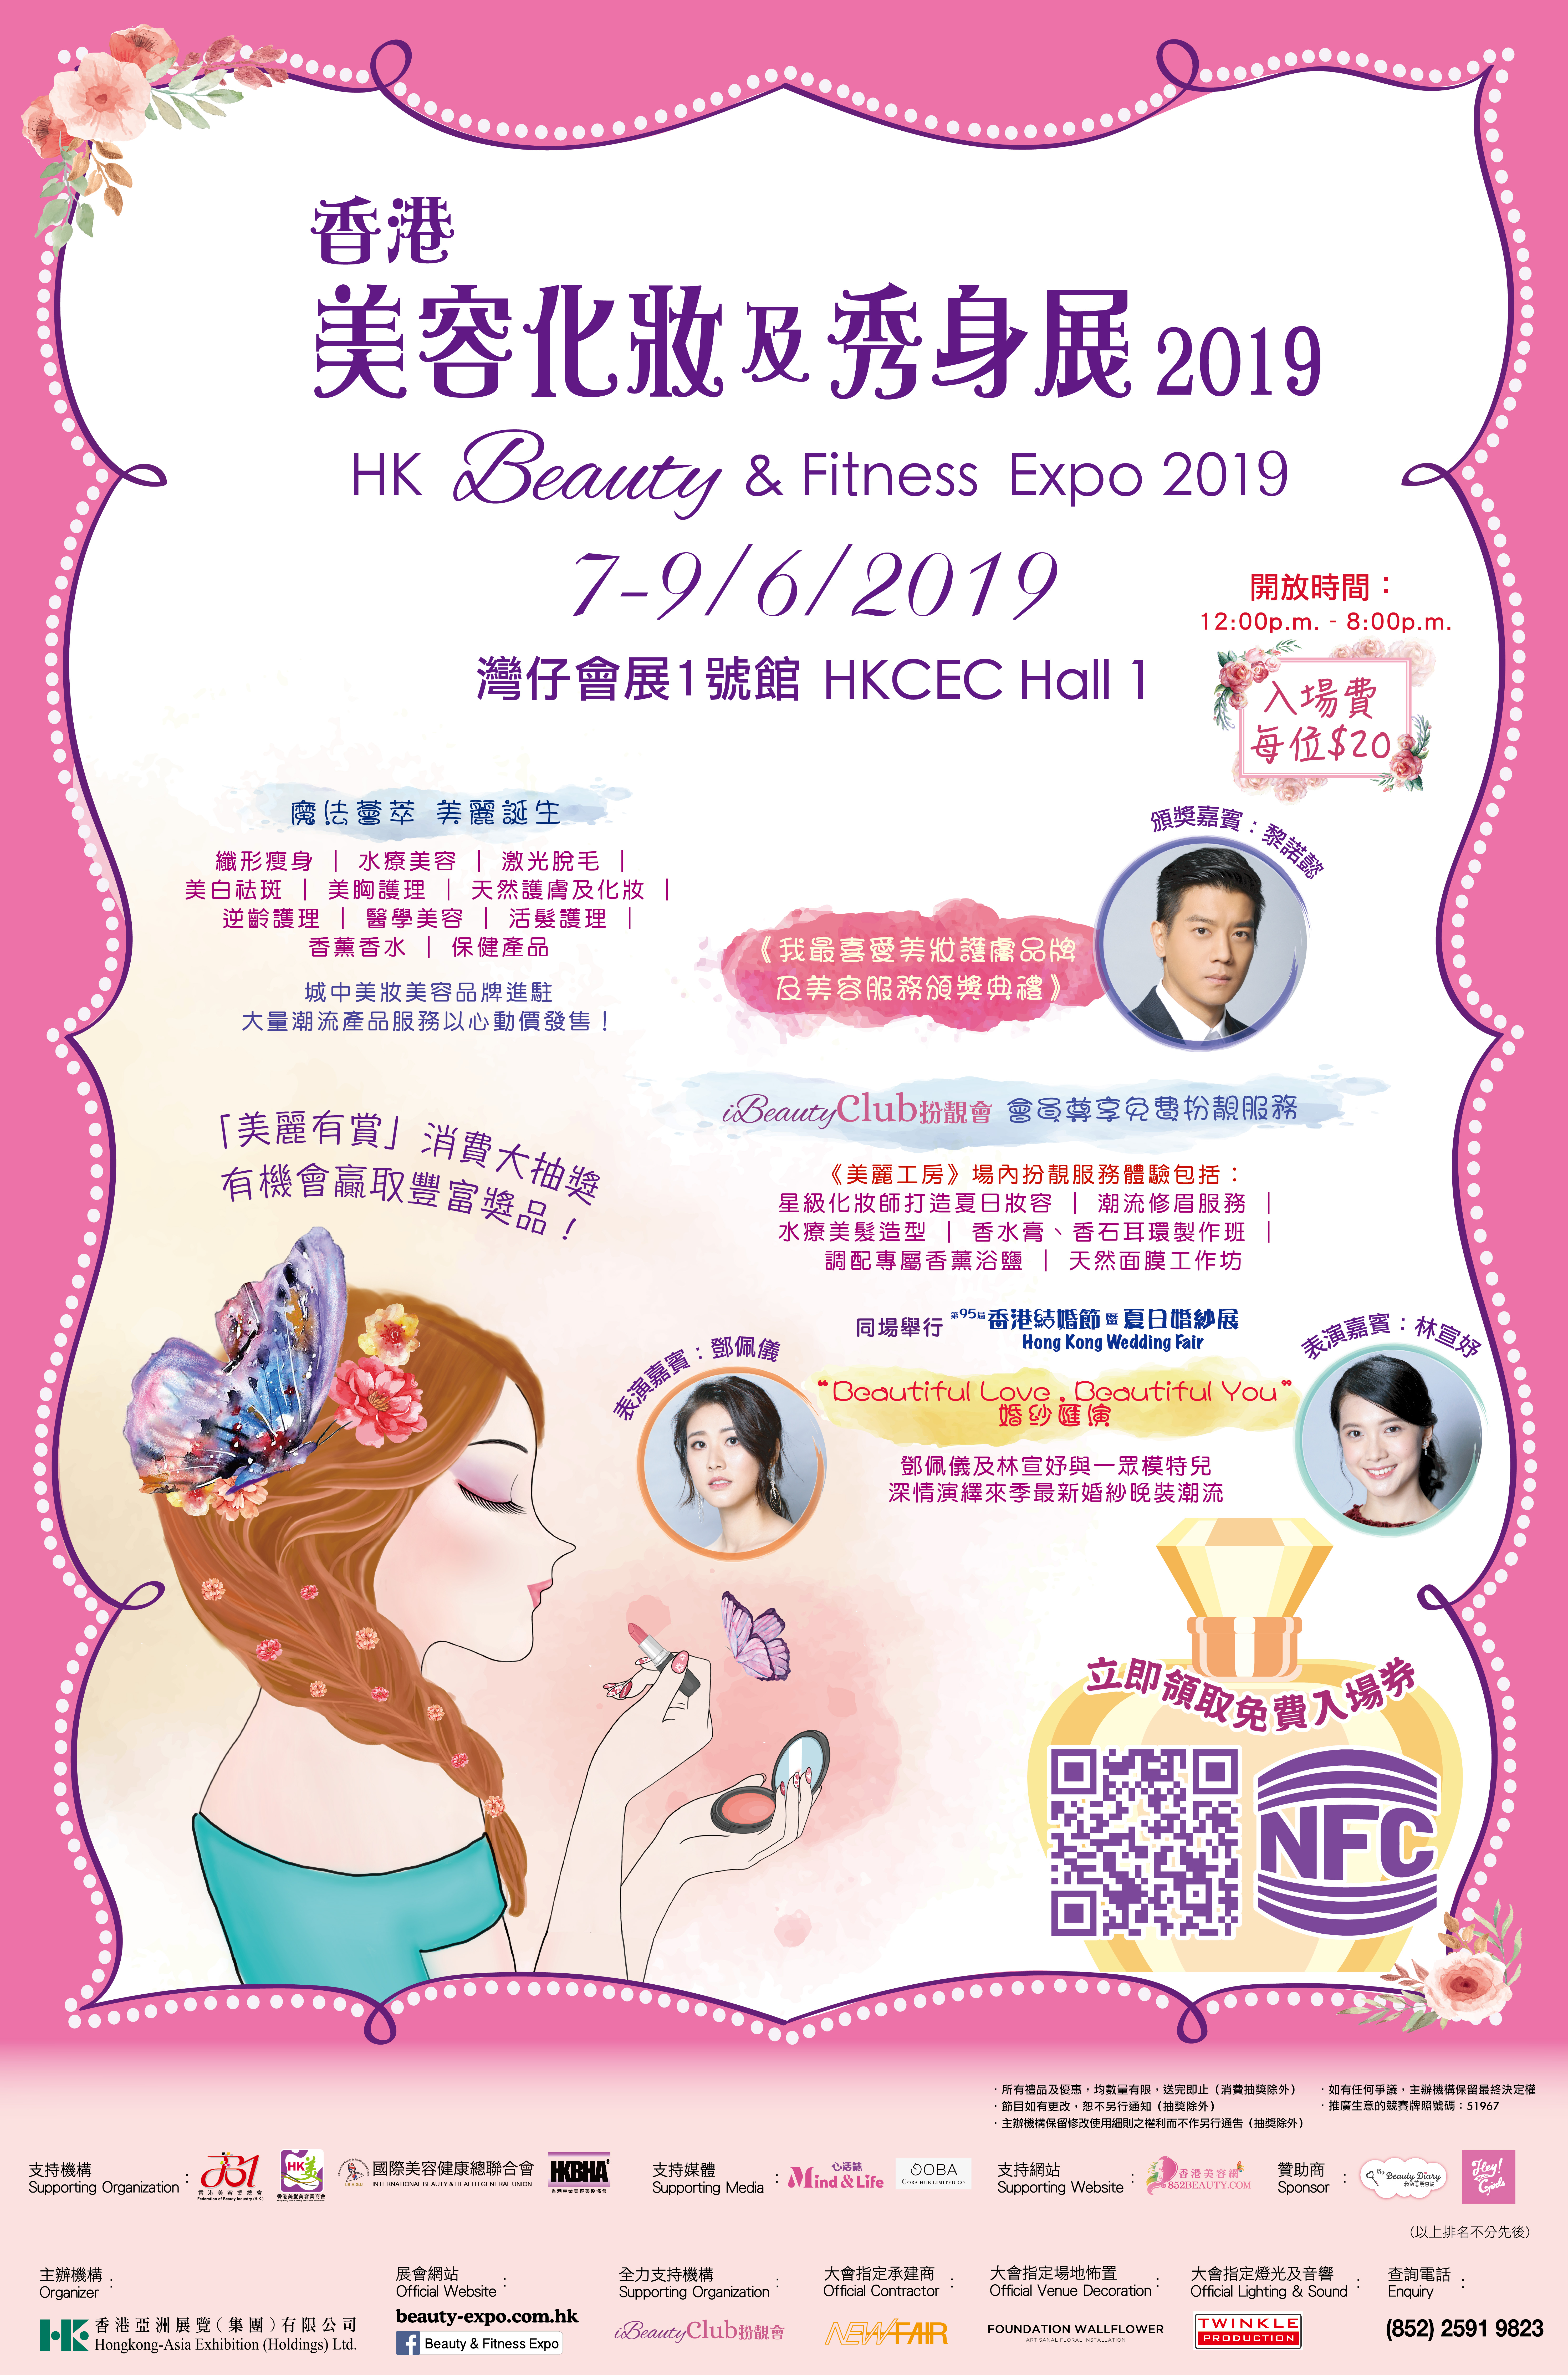 香港美容网 Hong Kong Beauty Salon 最新美容资讯: 美容化妝及秀身展 2019 x 香港美容網 852beauty 